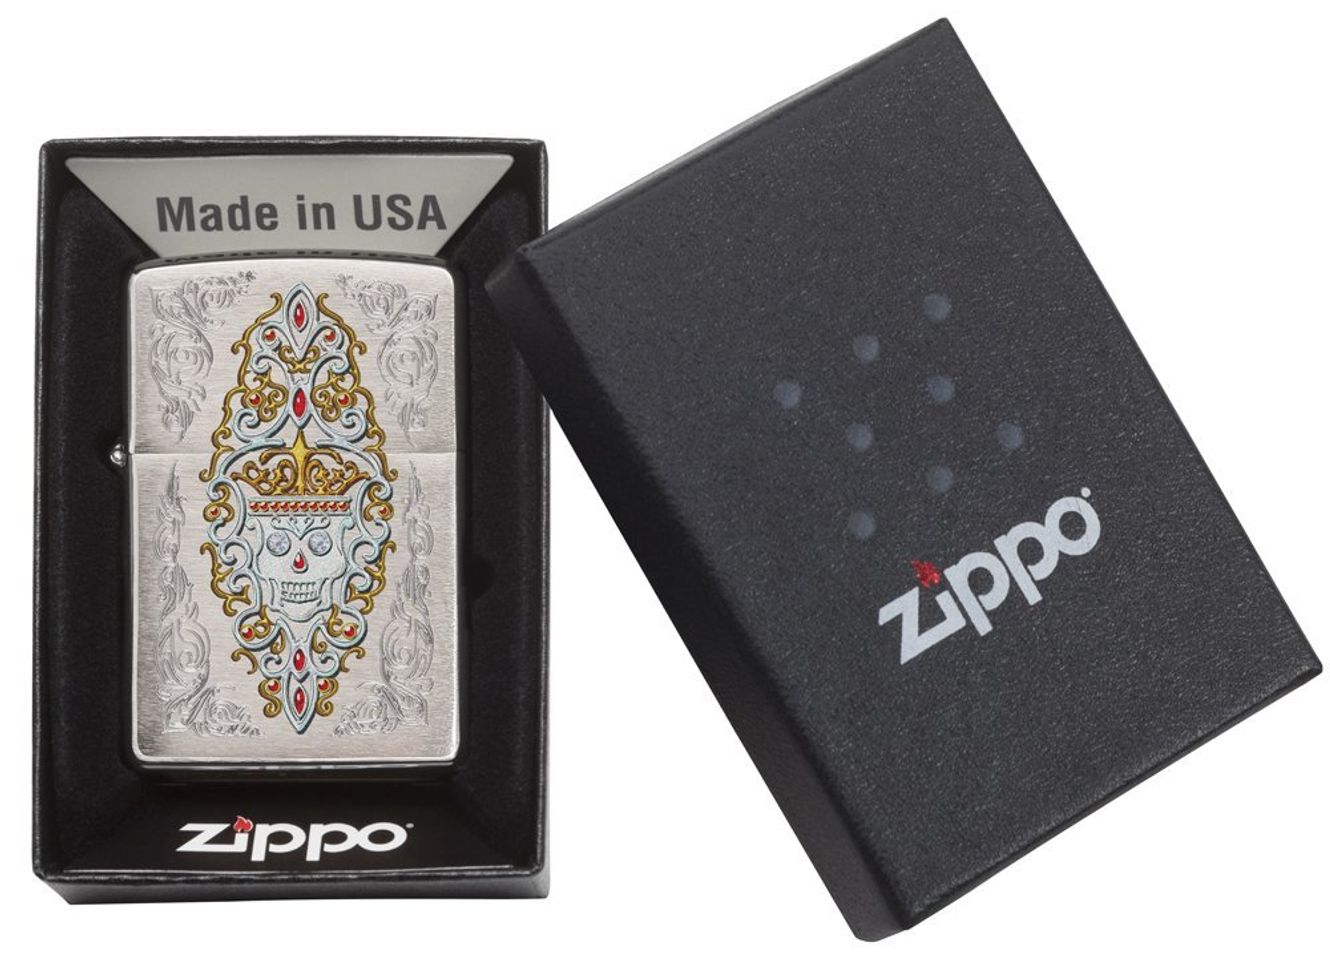 Các thành phần cấu tạo nên chiếc bật lửa Zippo Brushed Chrome Jeweled đều được nghiên cứu kỹ lưỡng và tỉ mỉ trước khi đưa vào sản xuất